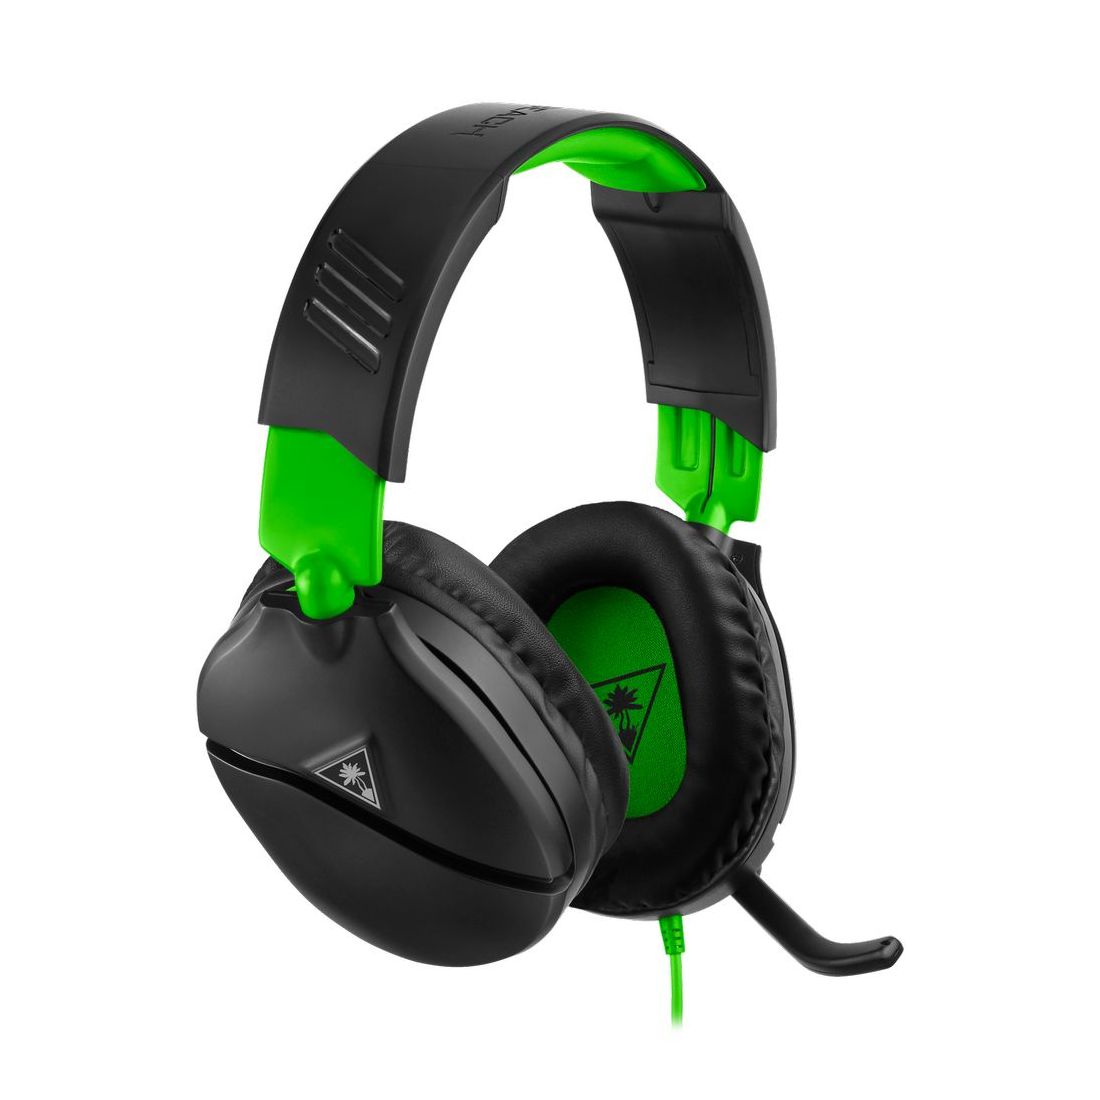 سماعات الرأس اير فورس ريكون 70 اكس للألعاب من تيرتل بيتش باللونين الأسود/الأخضر لأجهزة اكس بوكس وان